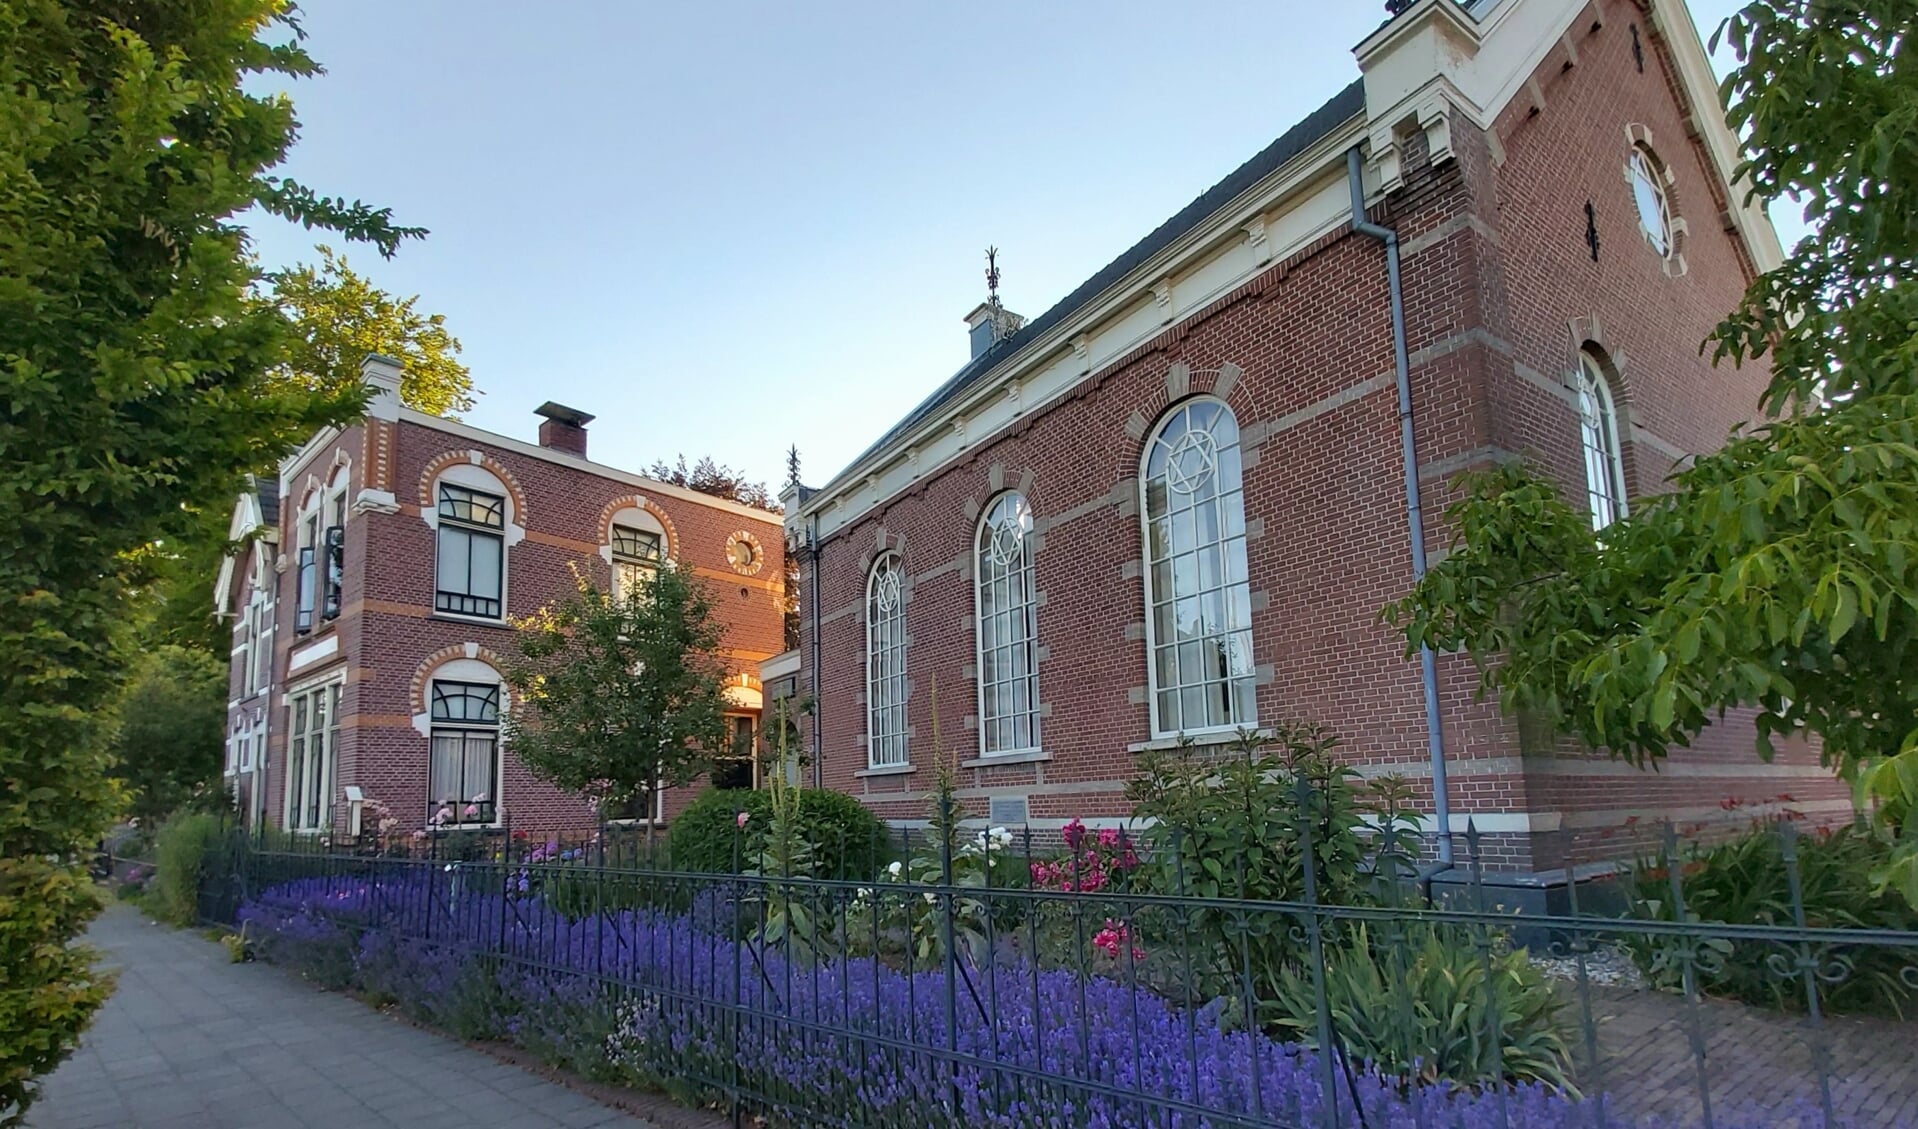  Herfst openstelling van de synagoge aan de Spoorstraat in Winterswijk. Foto: PR